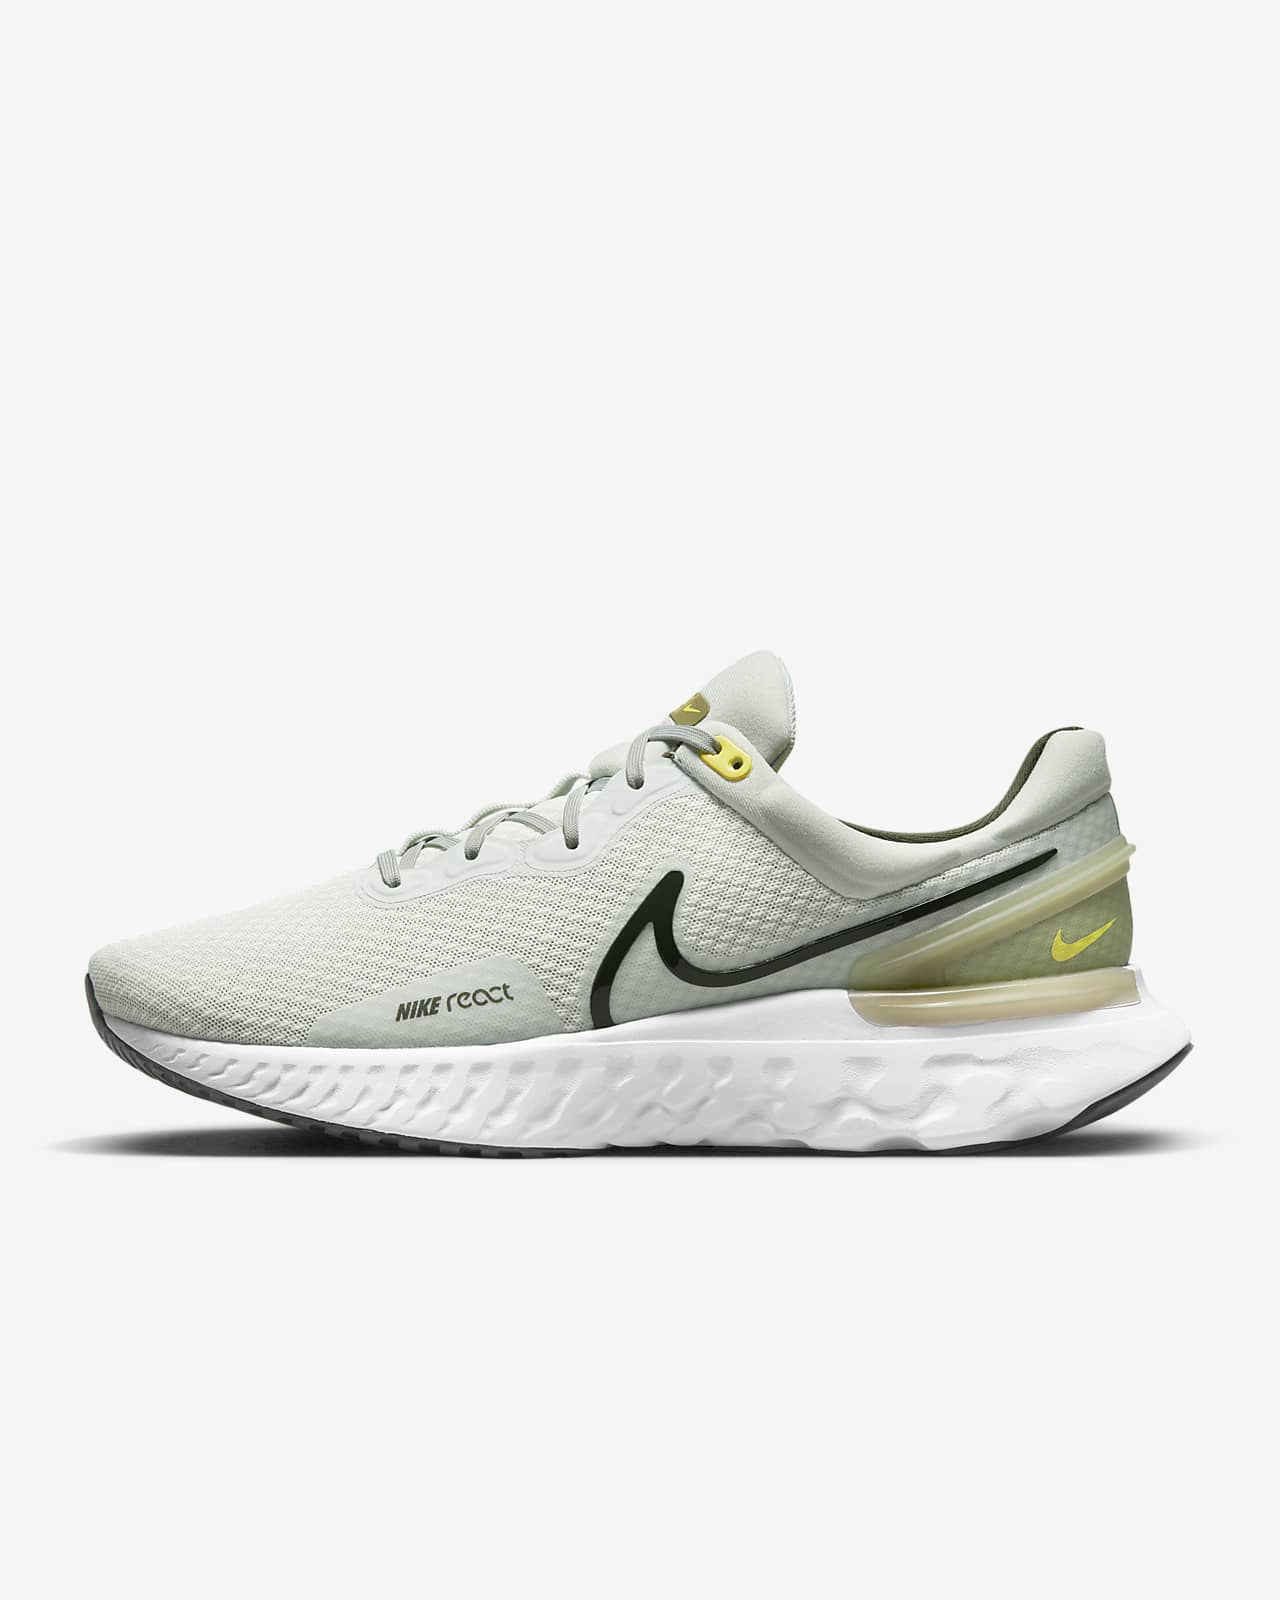 Nike React Miler 3 Men's Road Running Shoes